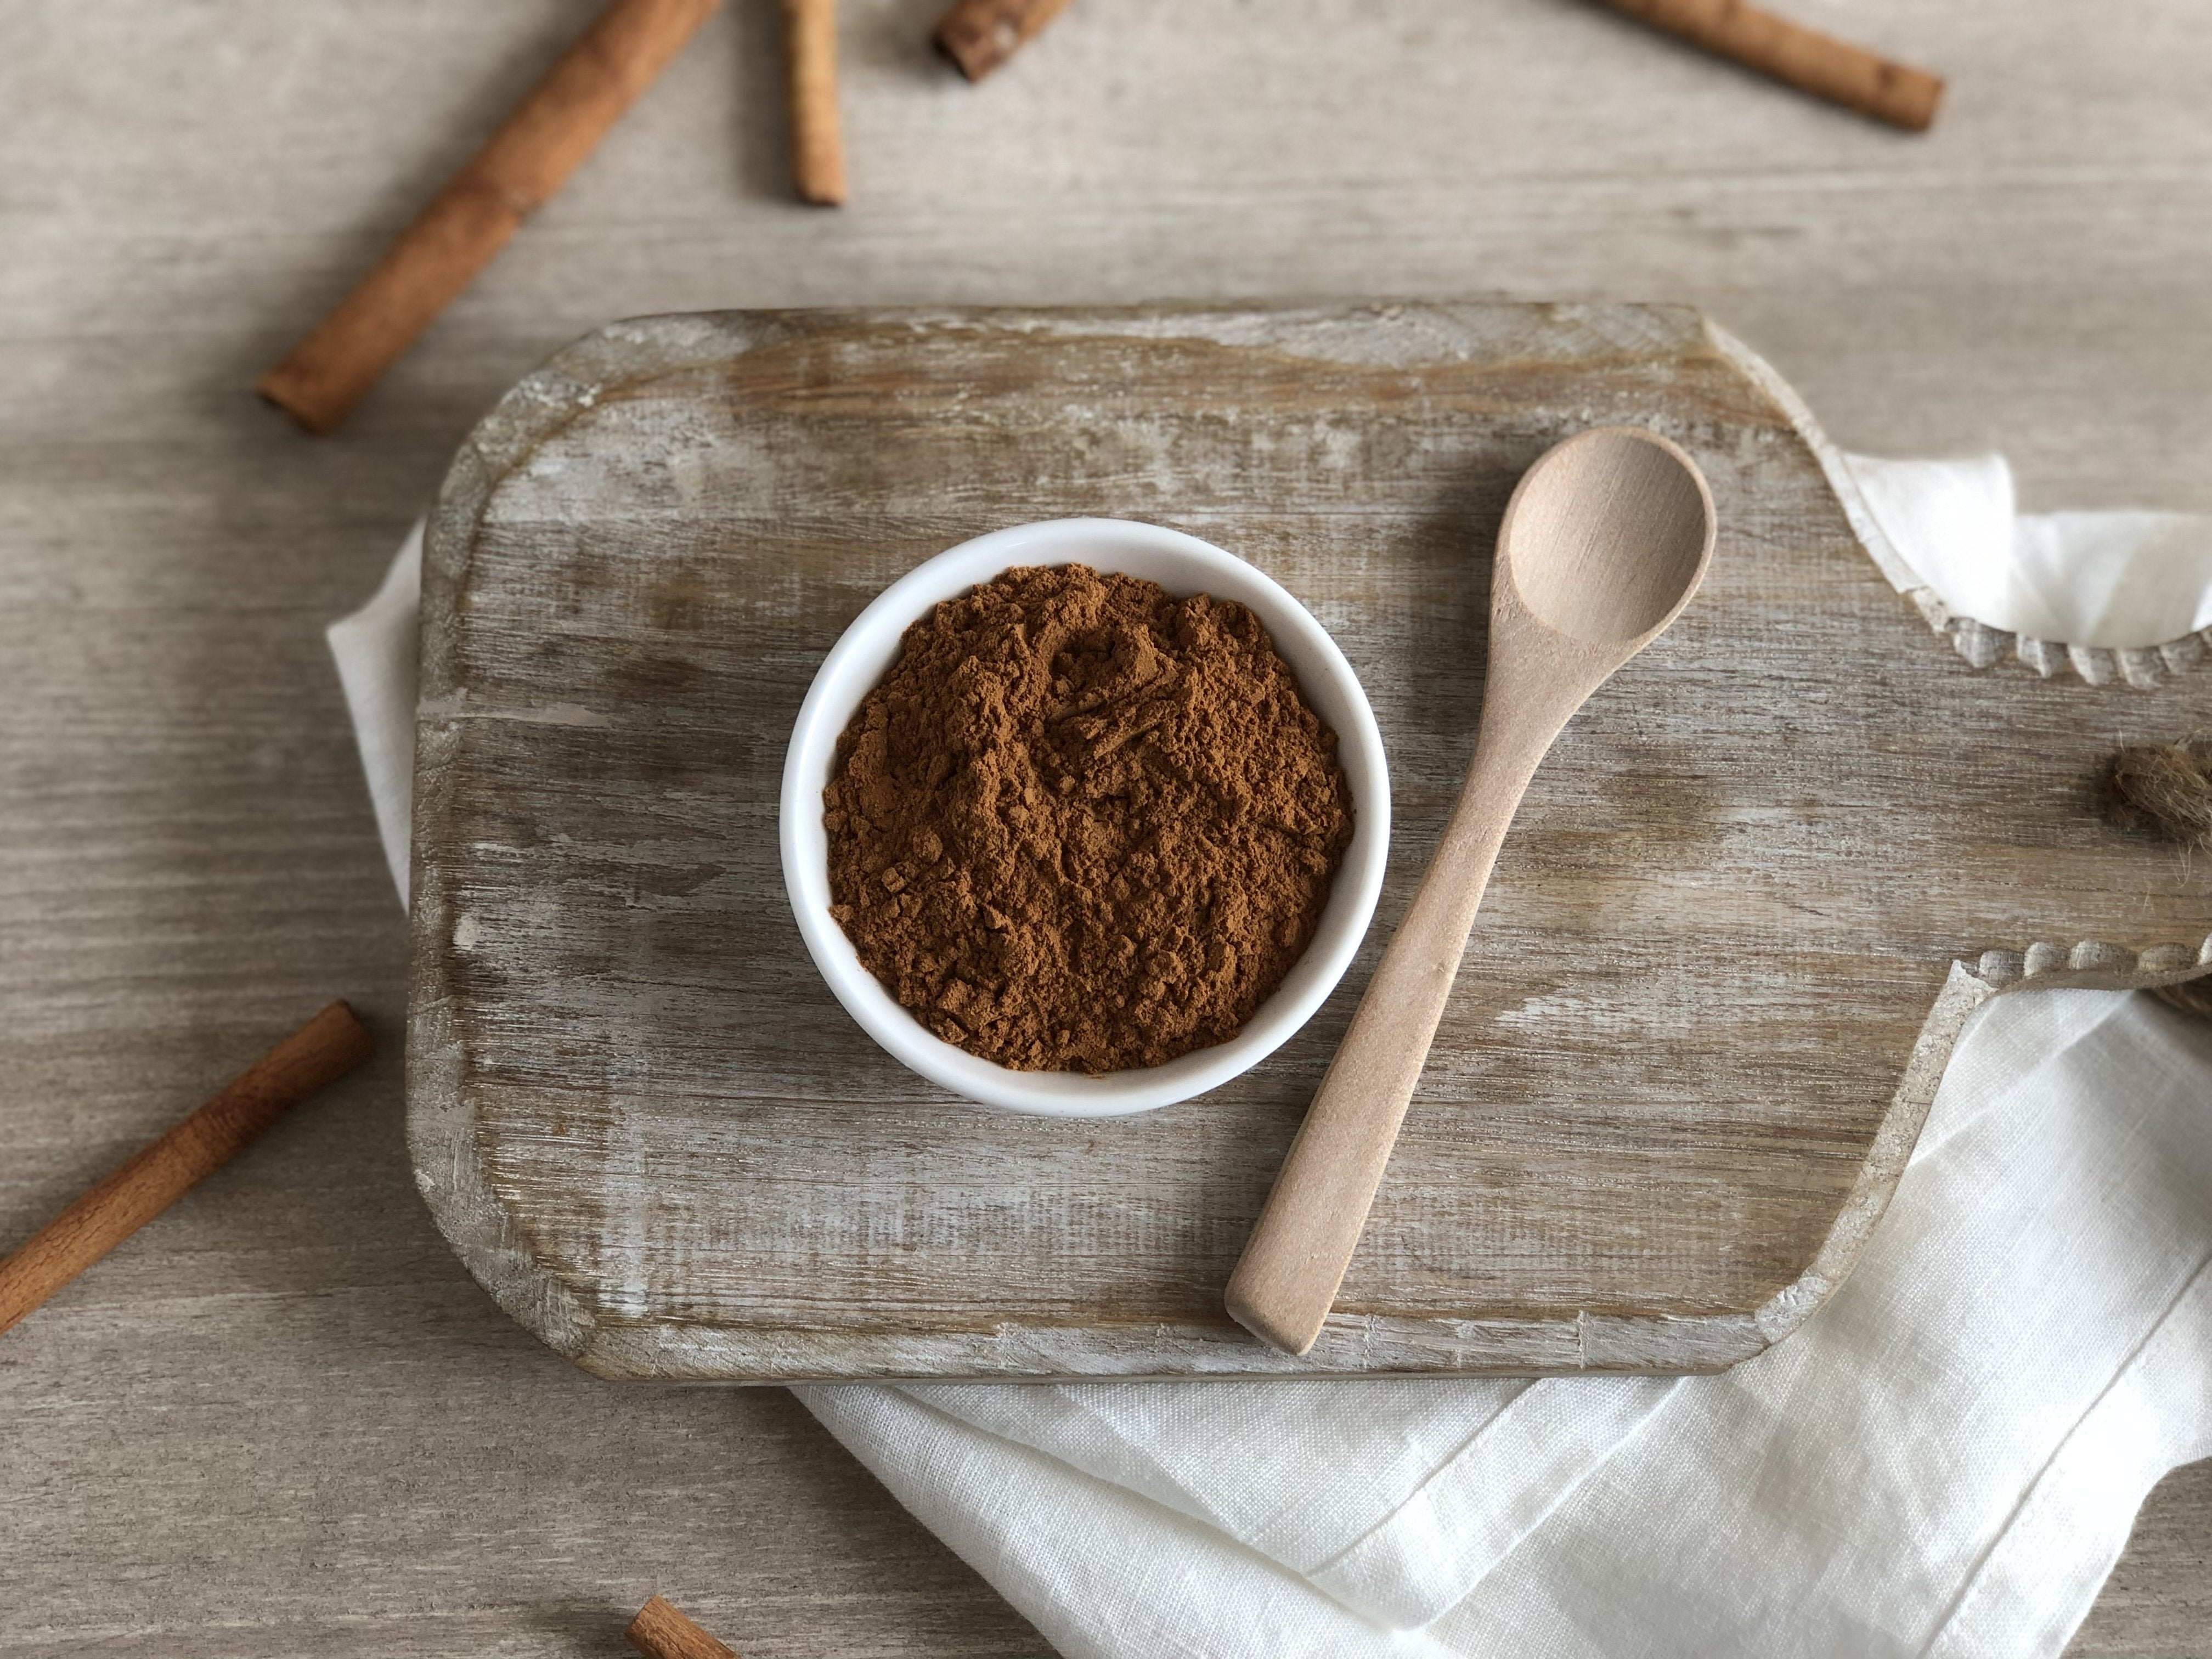 Cassia Cinnamon Powder: USDA Organic & Batch Tested Gluten Free